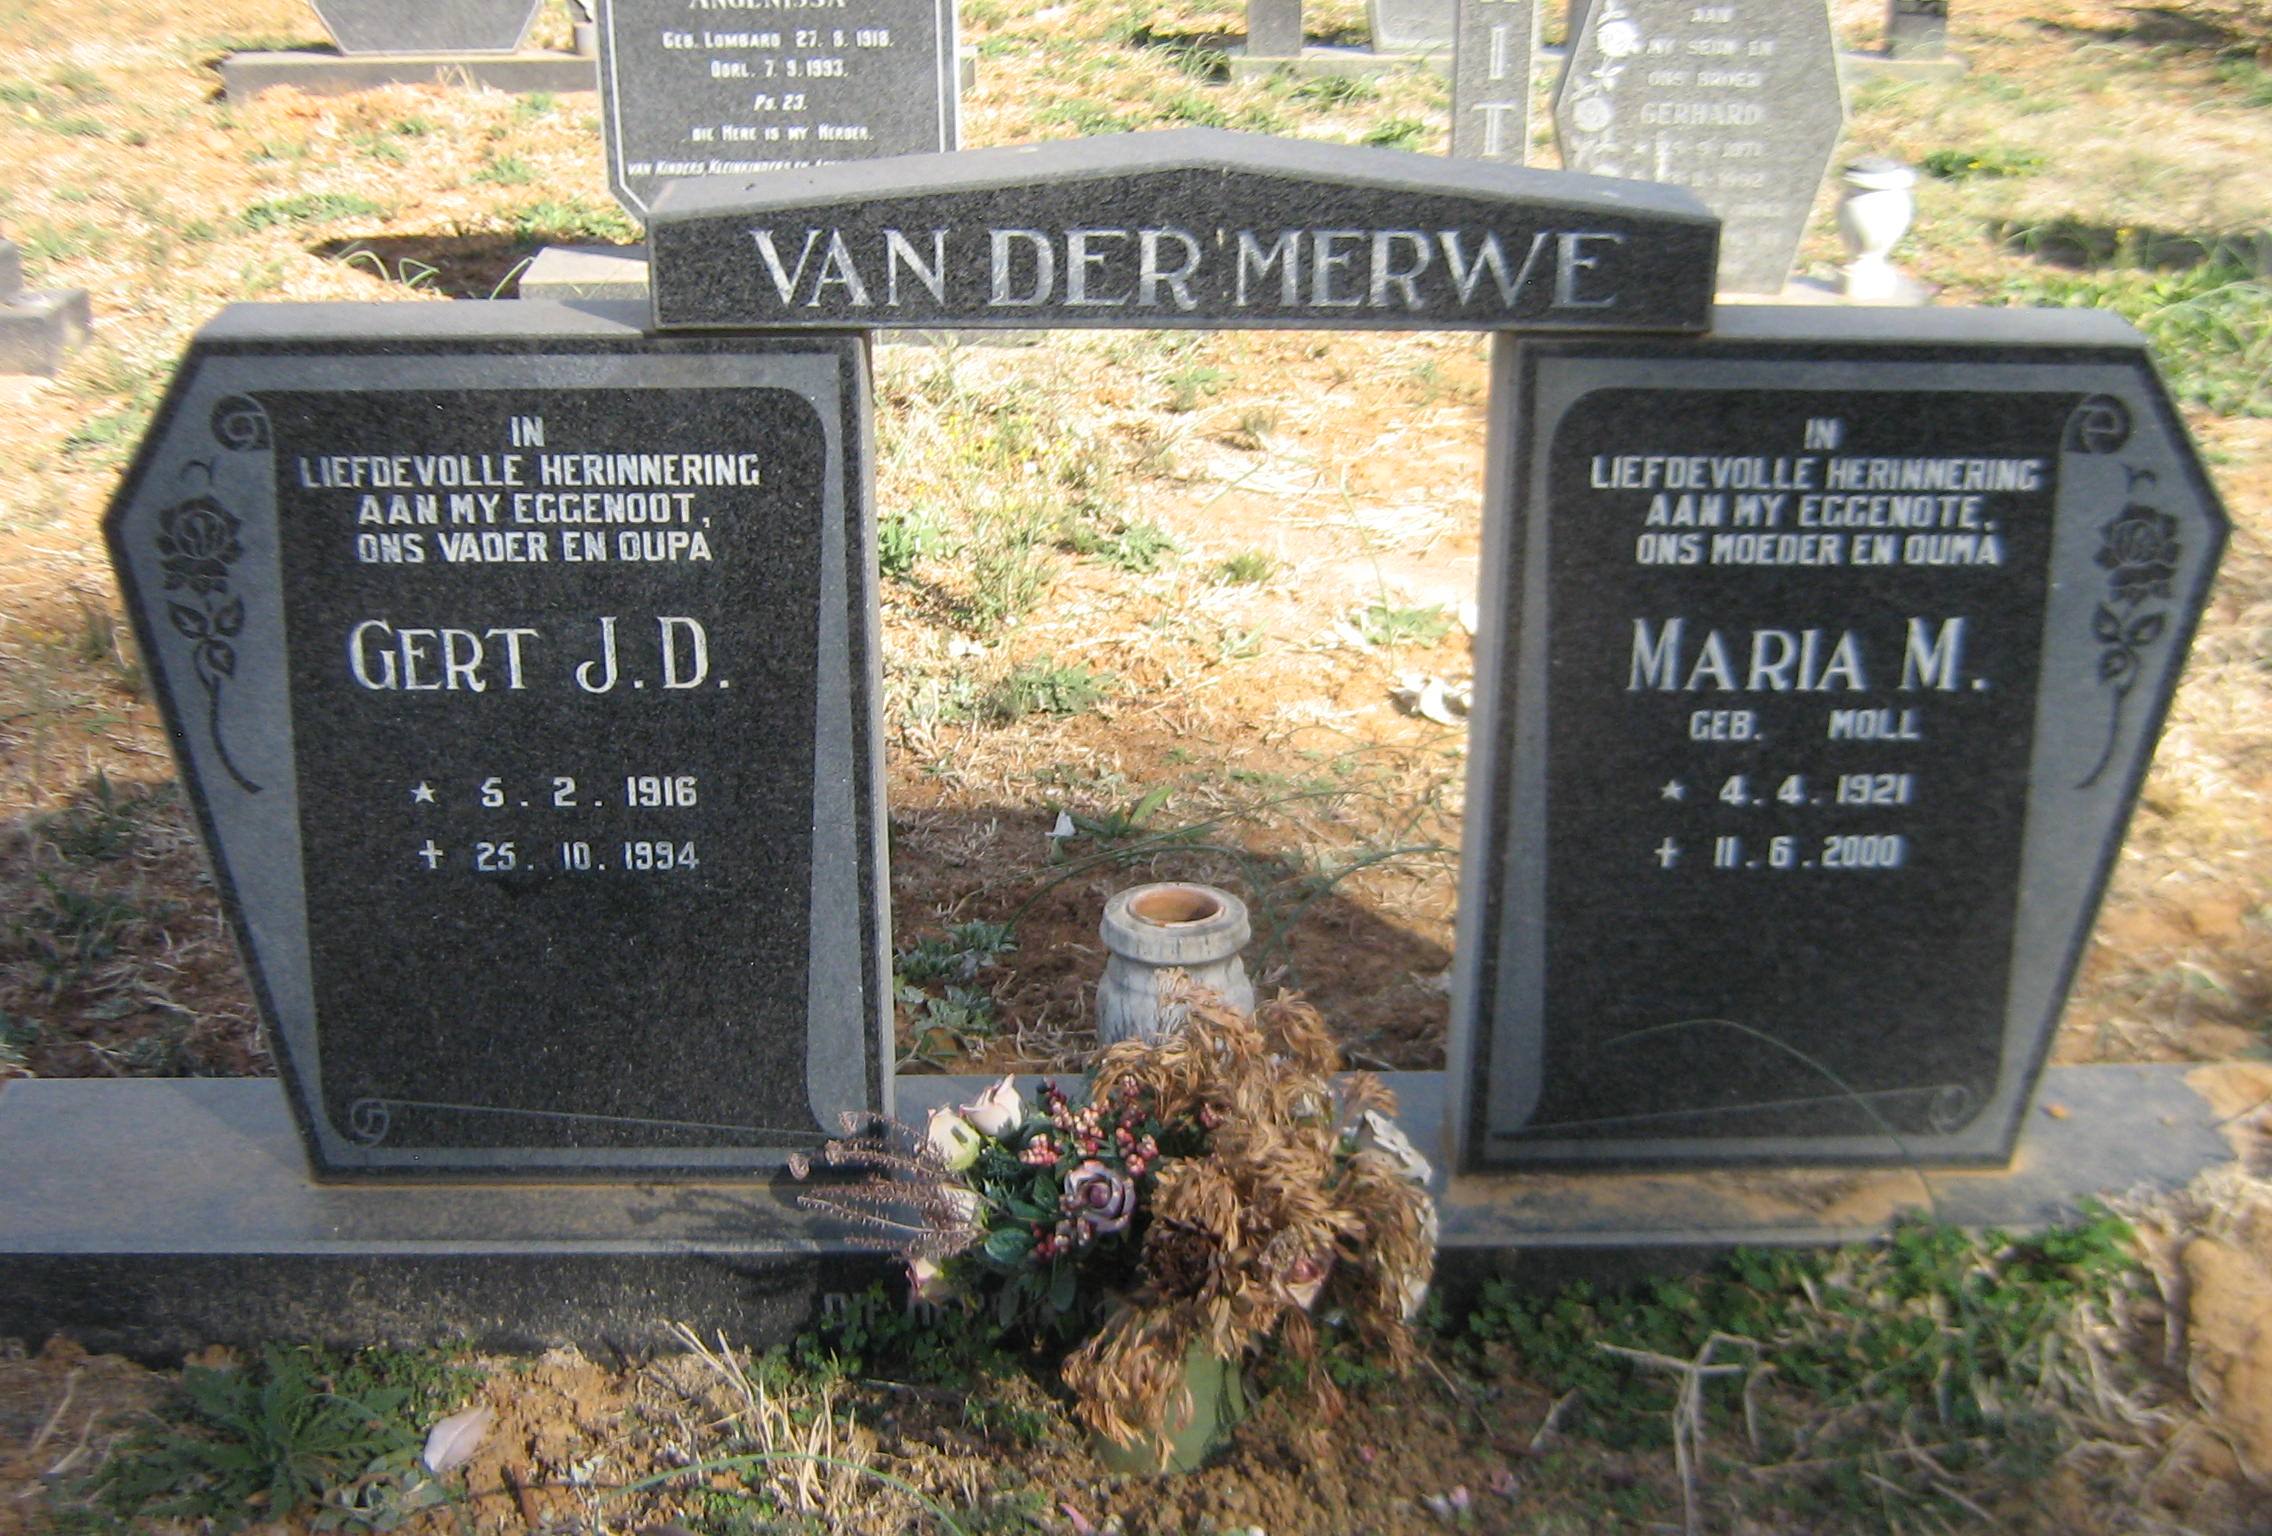 MERWE Gert J.D., van der 1916-1994 & Maria M. MOLL 1921-2000